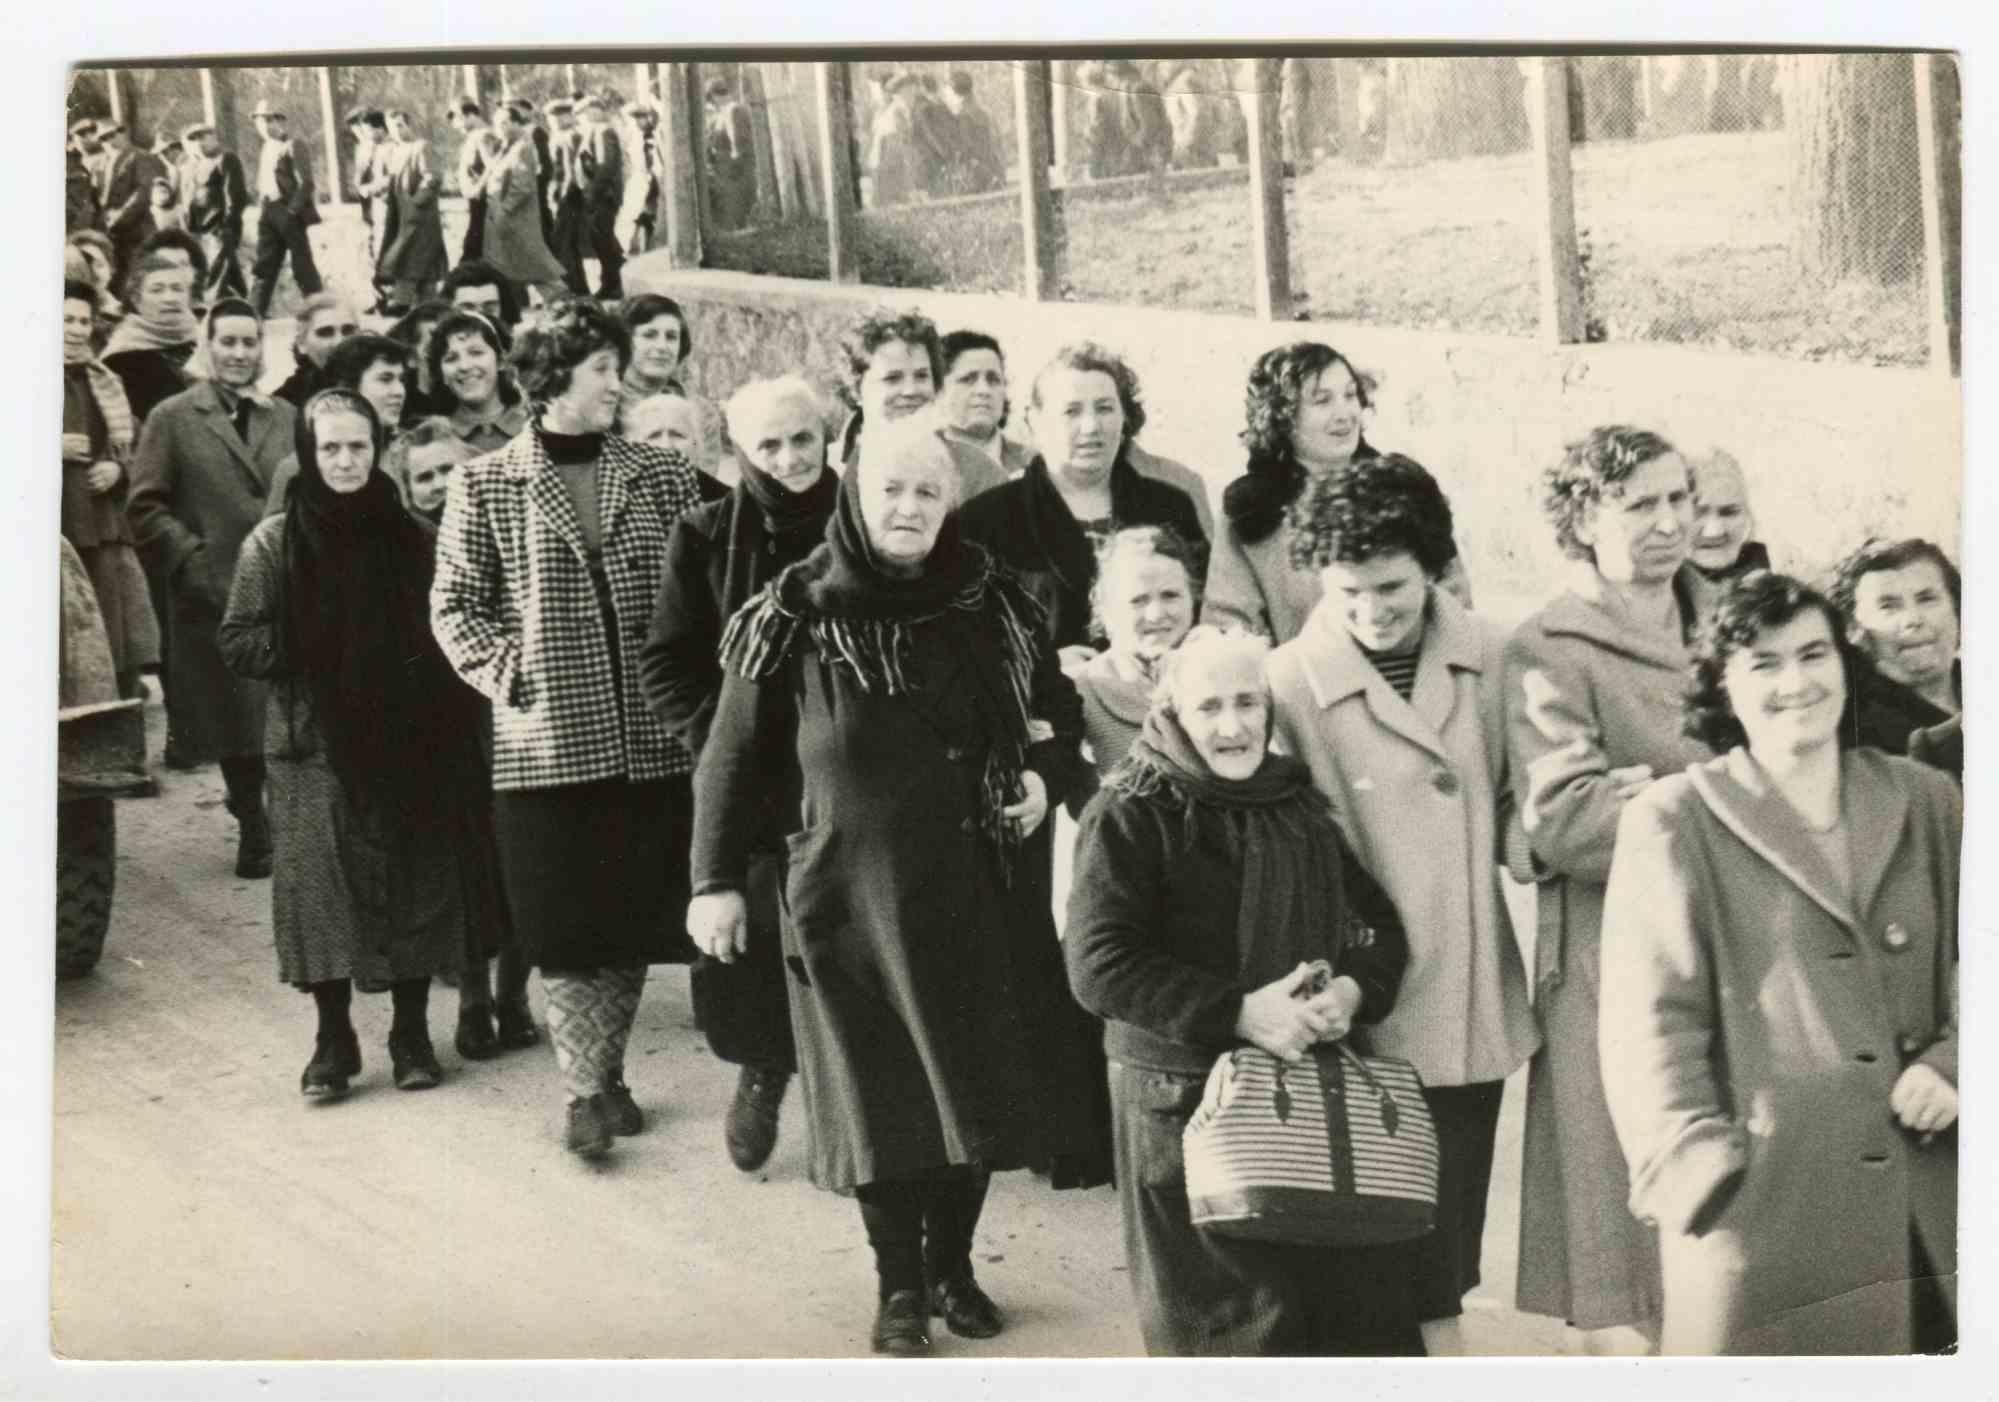 Unknown Black and White Photograph – The Line - Historische Fotografien über die feministische Bewegung - 1950er Jahre